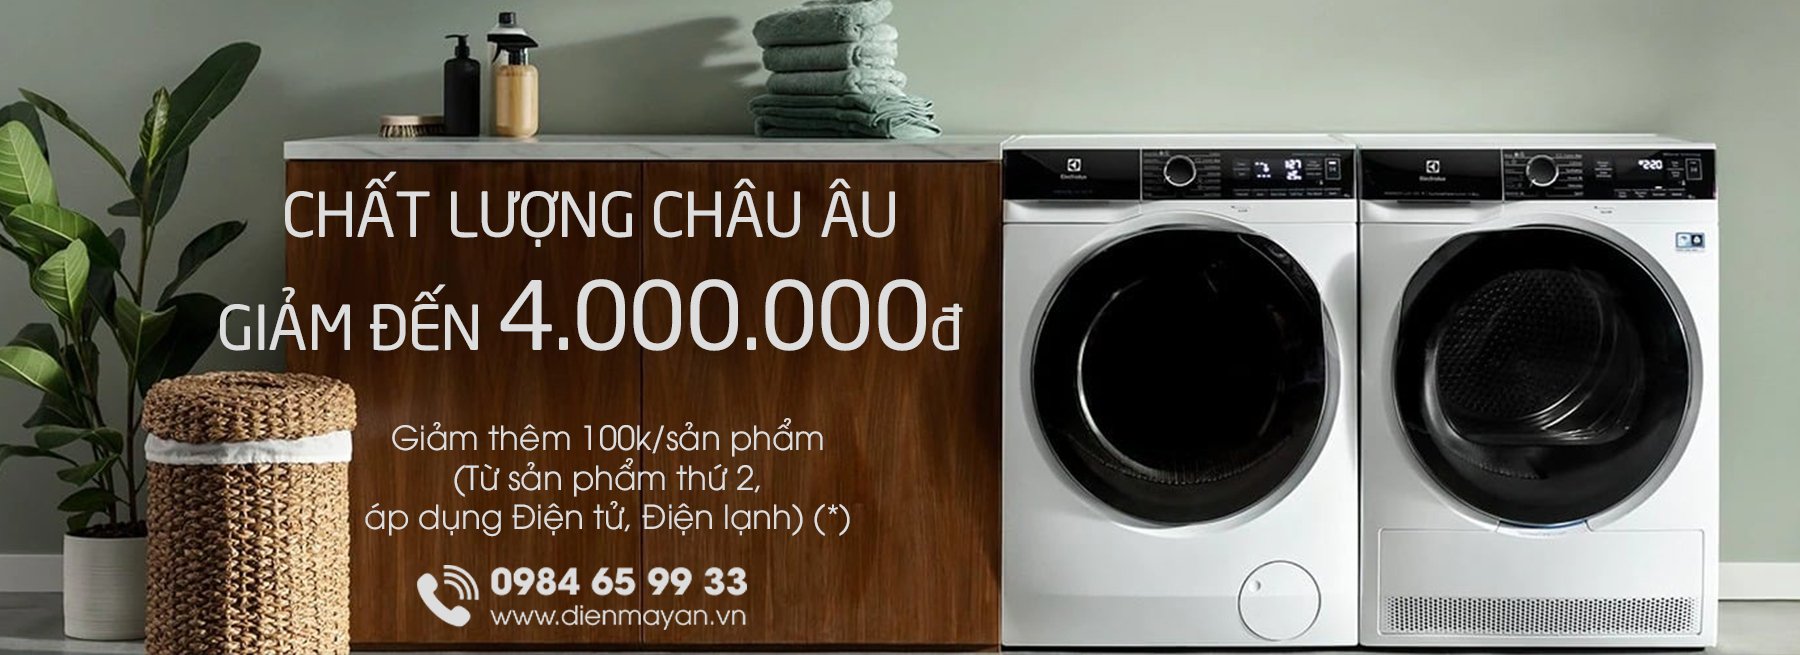 Máy giặt sấy Electrolux Inverter 10 kg EWW14012 chính hãng giá rẻ